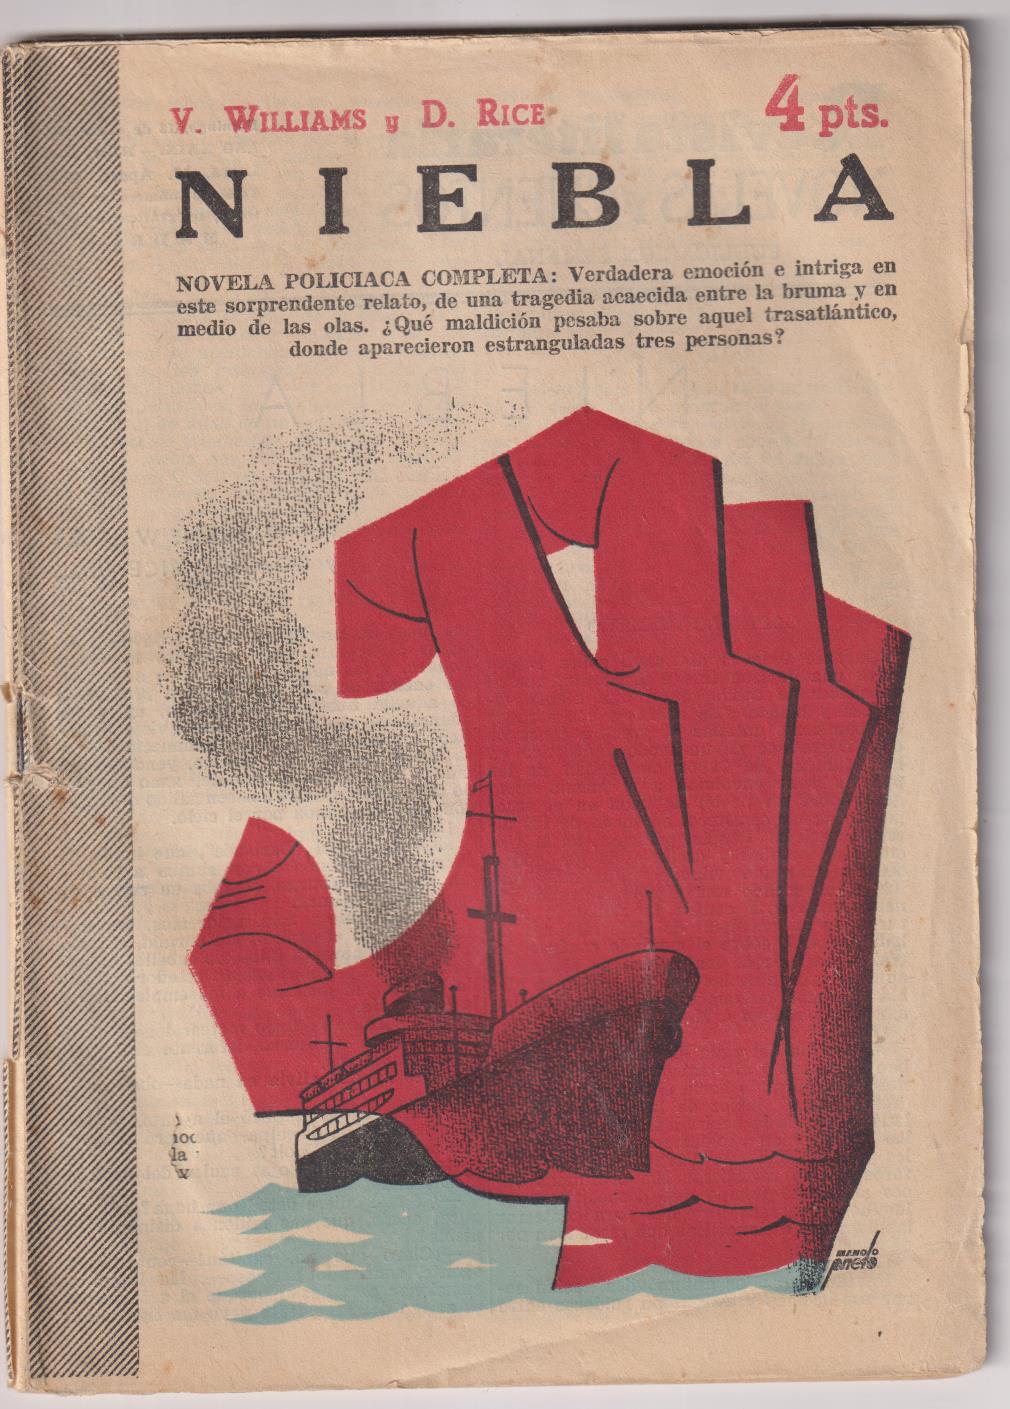 Revista Literaria Novelas y Cuentos. Niebla por V. Williams y D. Rice, año 1957